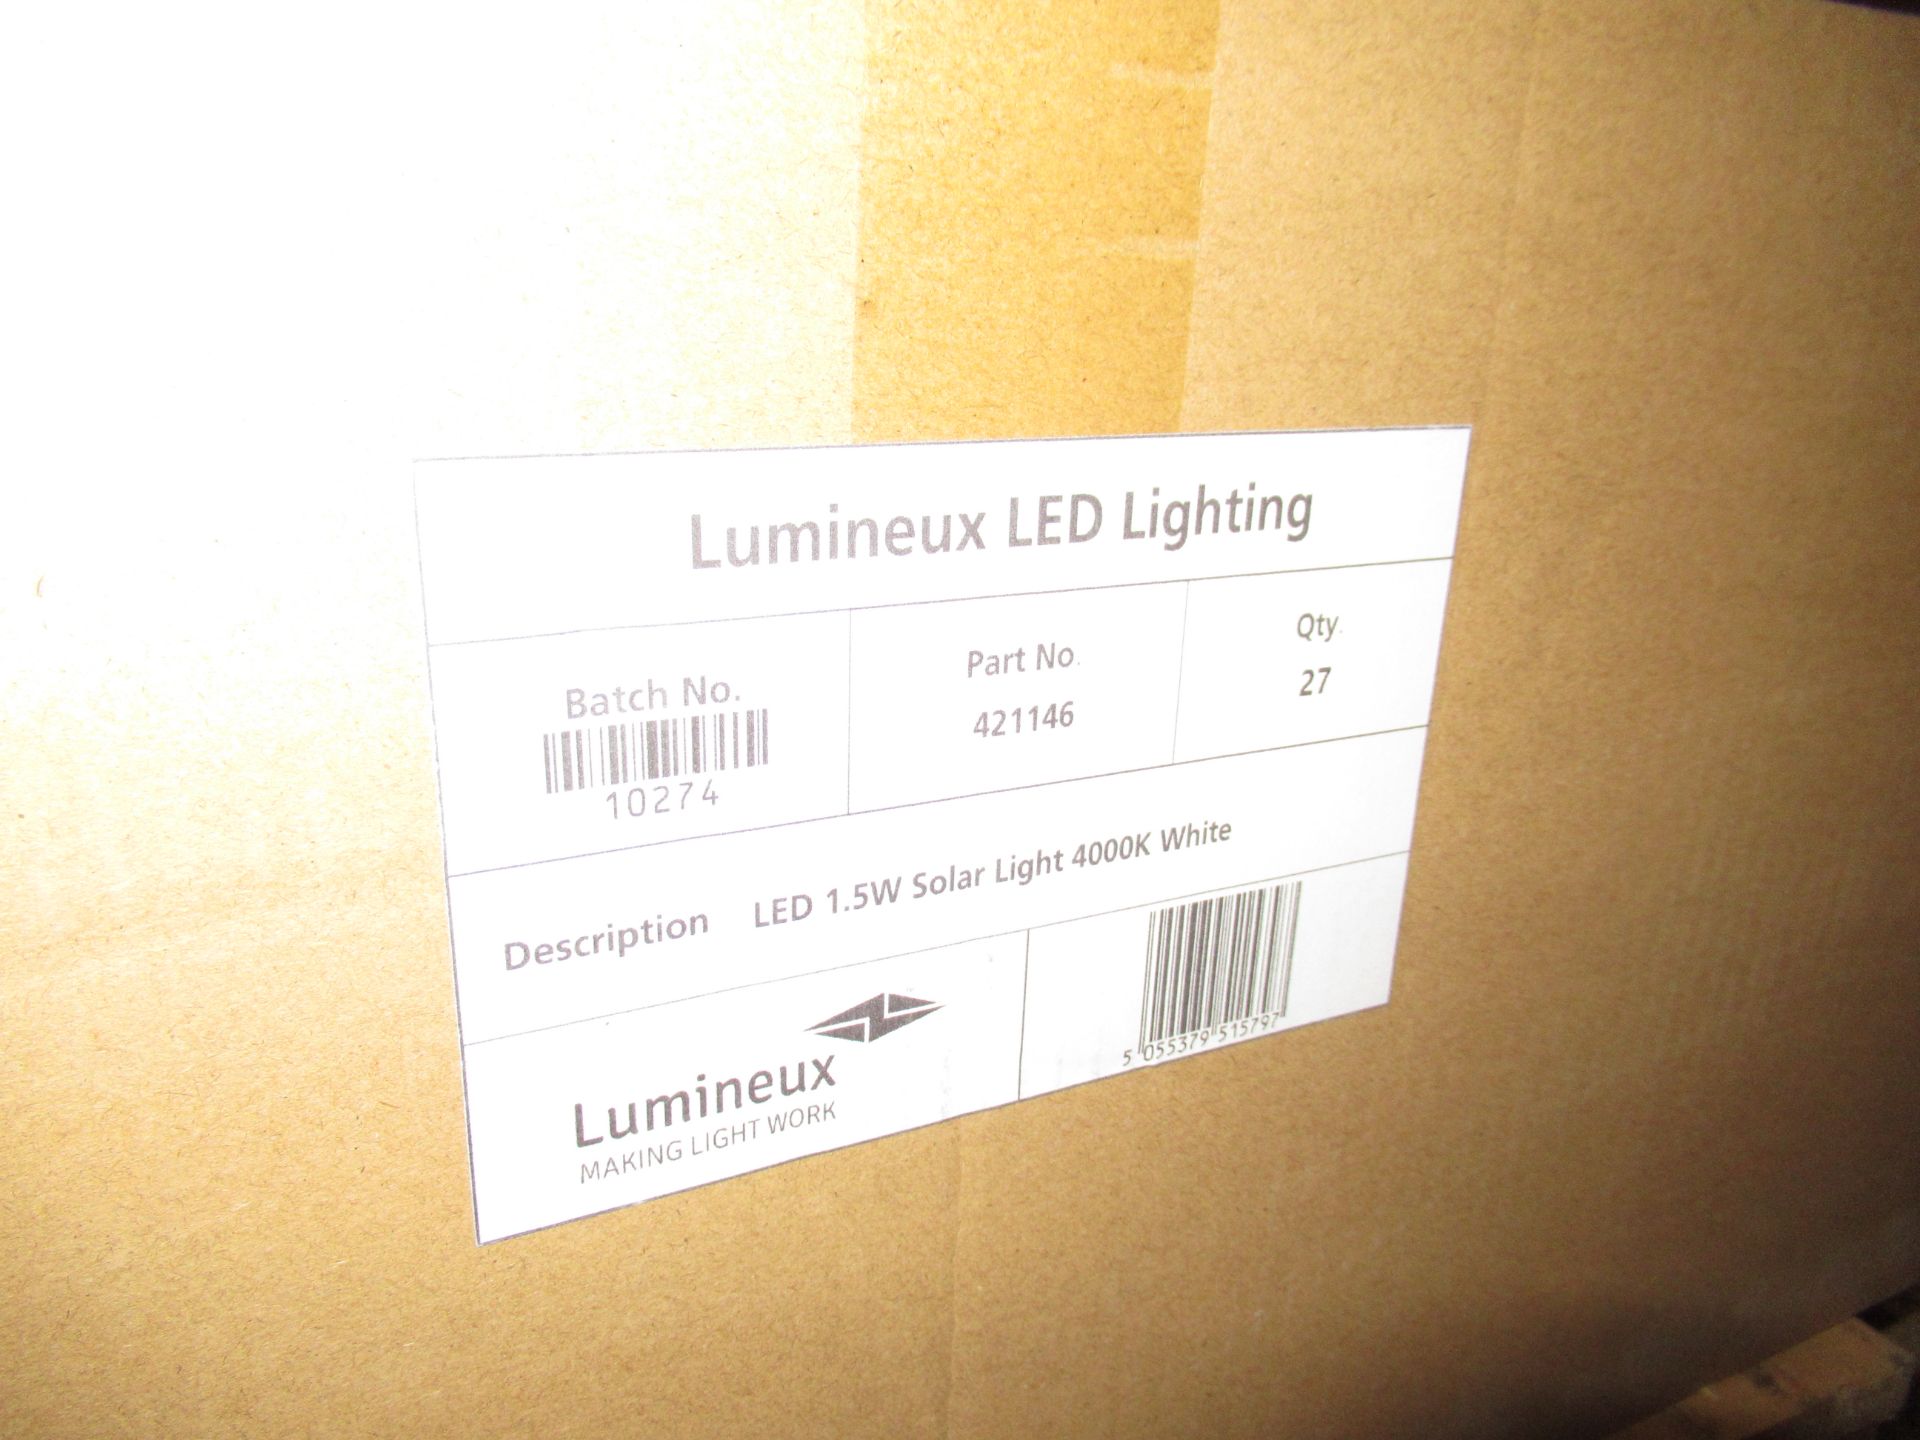 80 x LED 1.5W Solar Light 4000K white - Image 2 of 8